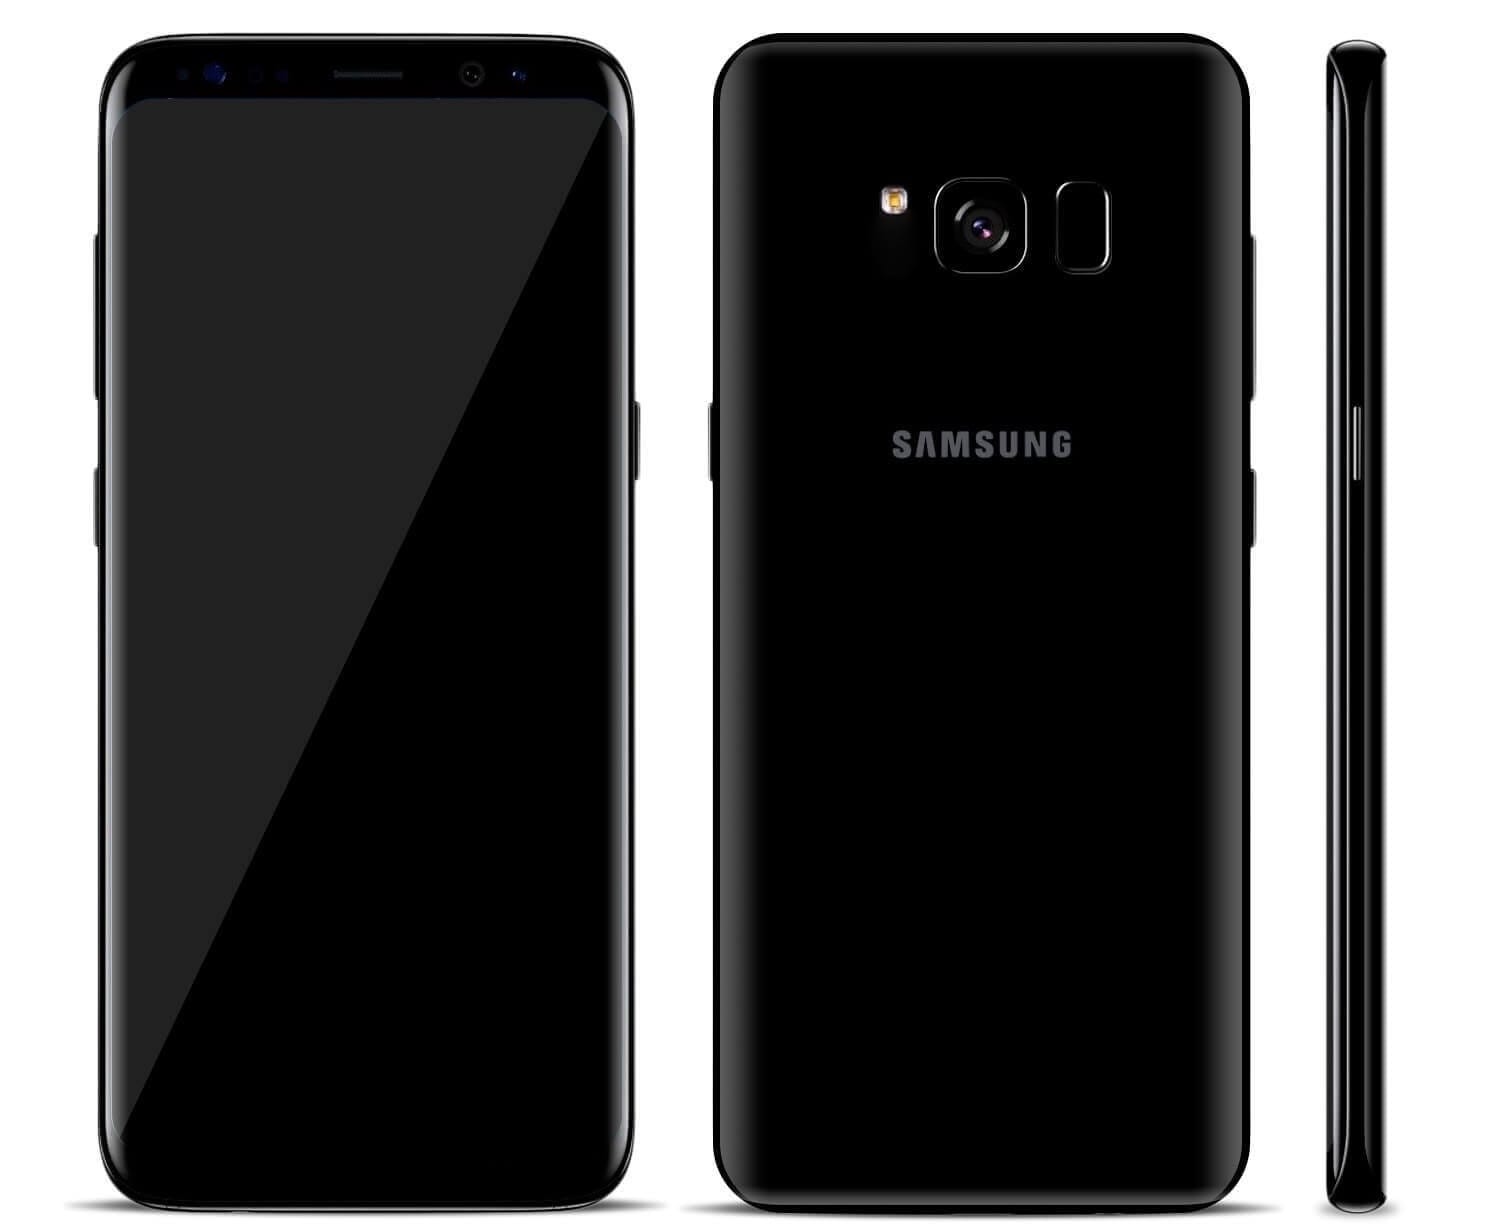 Samsung S8 6 128